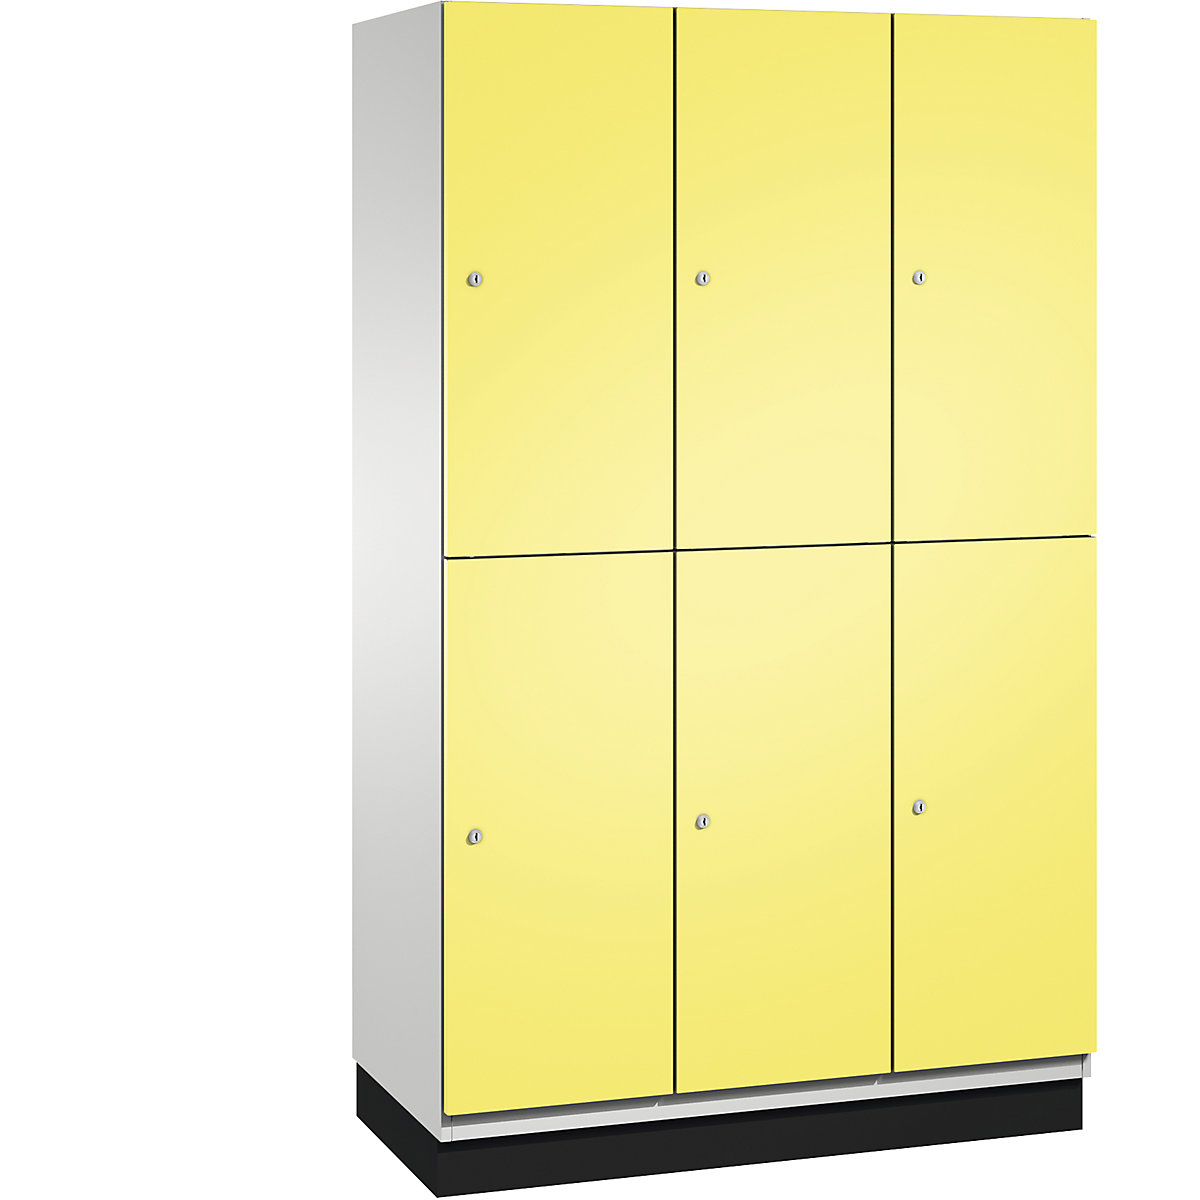 C+P – Skříň s boxy CAMBIO s tyčí na oděvy, 6 boxů, korpus světlý šedý / dveře sírové žluté, šířka 1200 mm